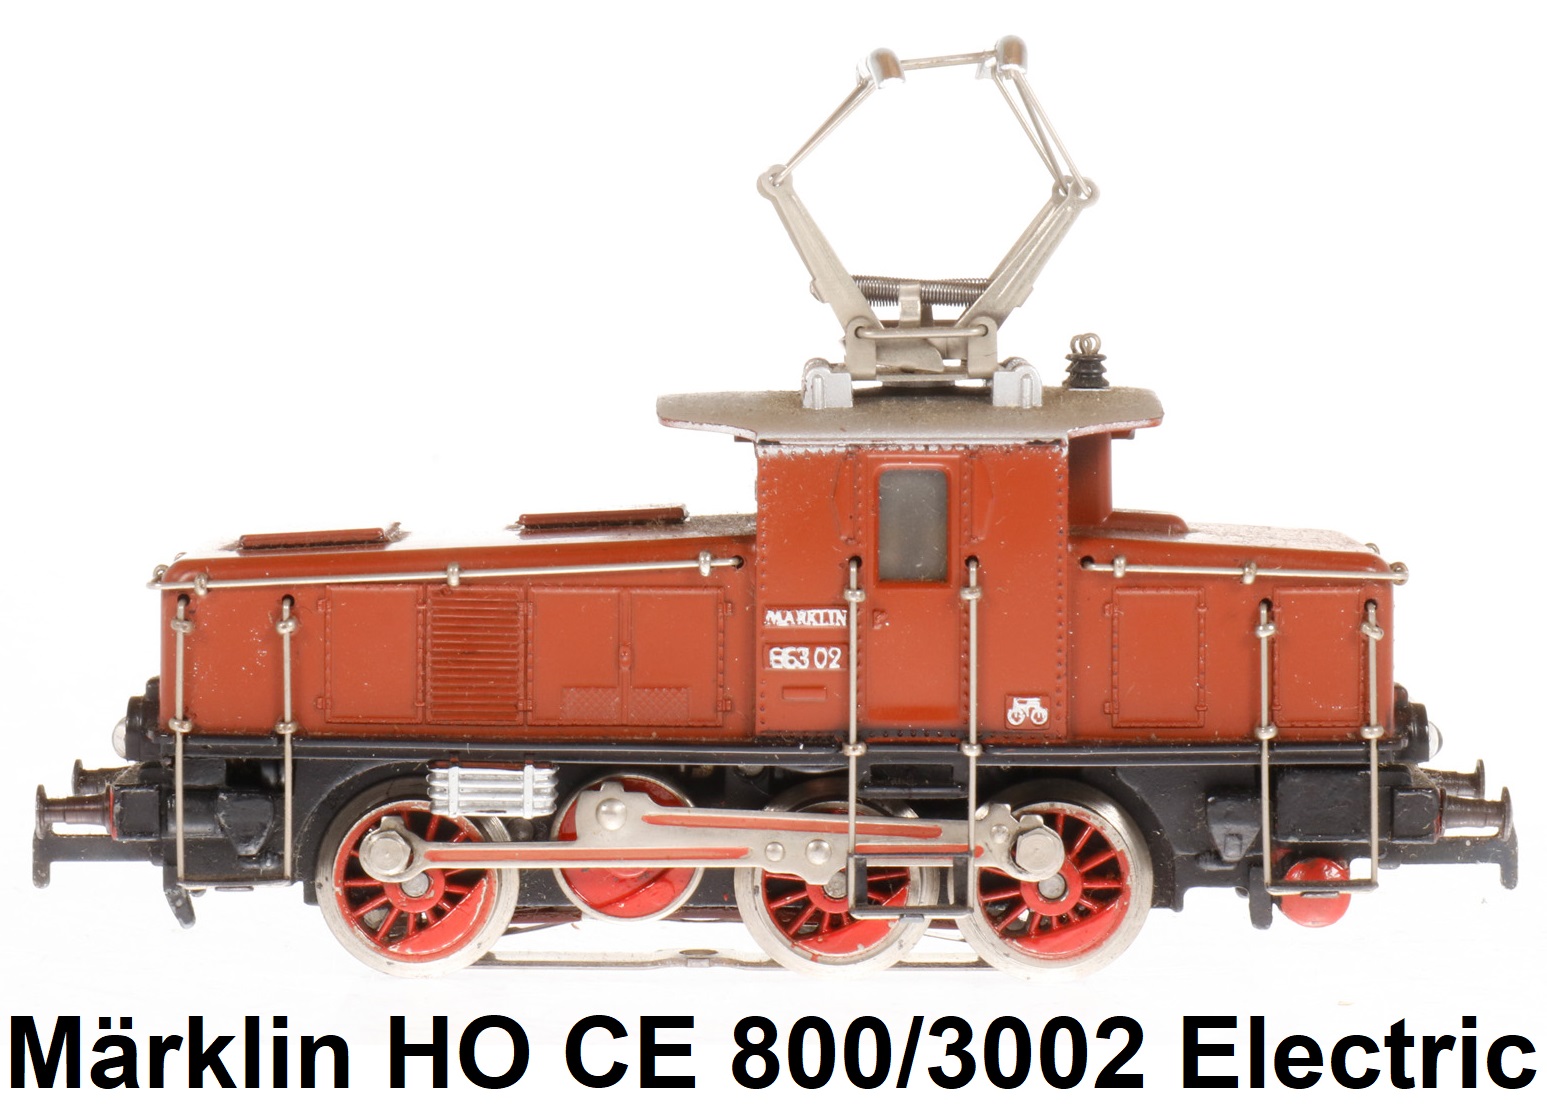 Märklin HO gauge CE 800/3002 electric locomotive E63 02